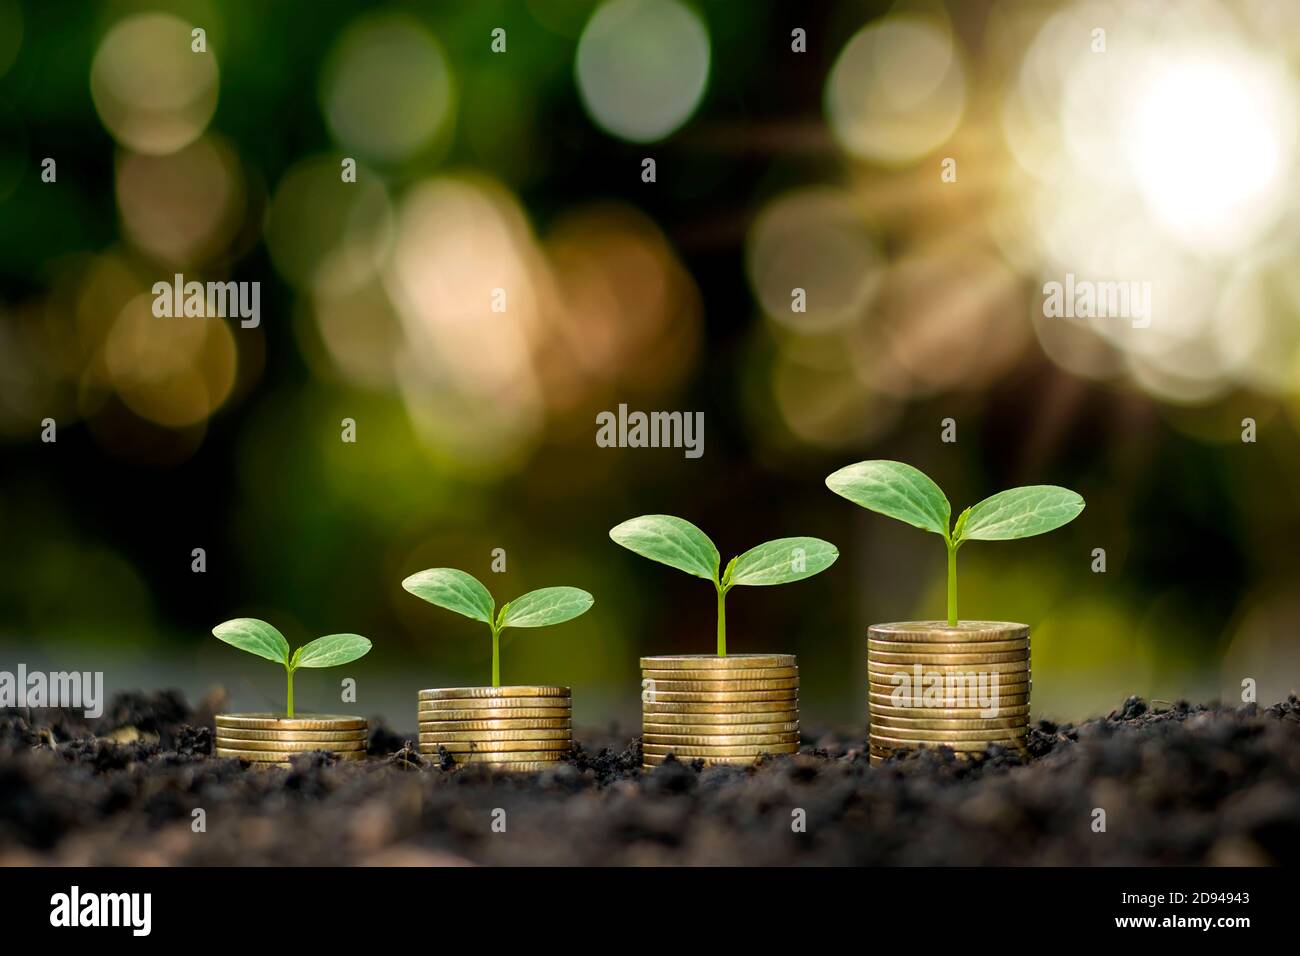 Plantas en crecimiento sobre monedas apiladas sobre fondos verdes borrosos y luz natural con ideas financieras. Foto de stock